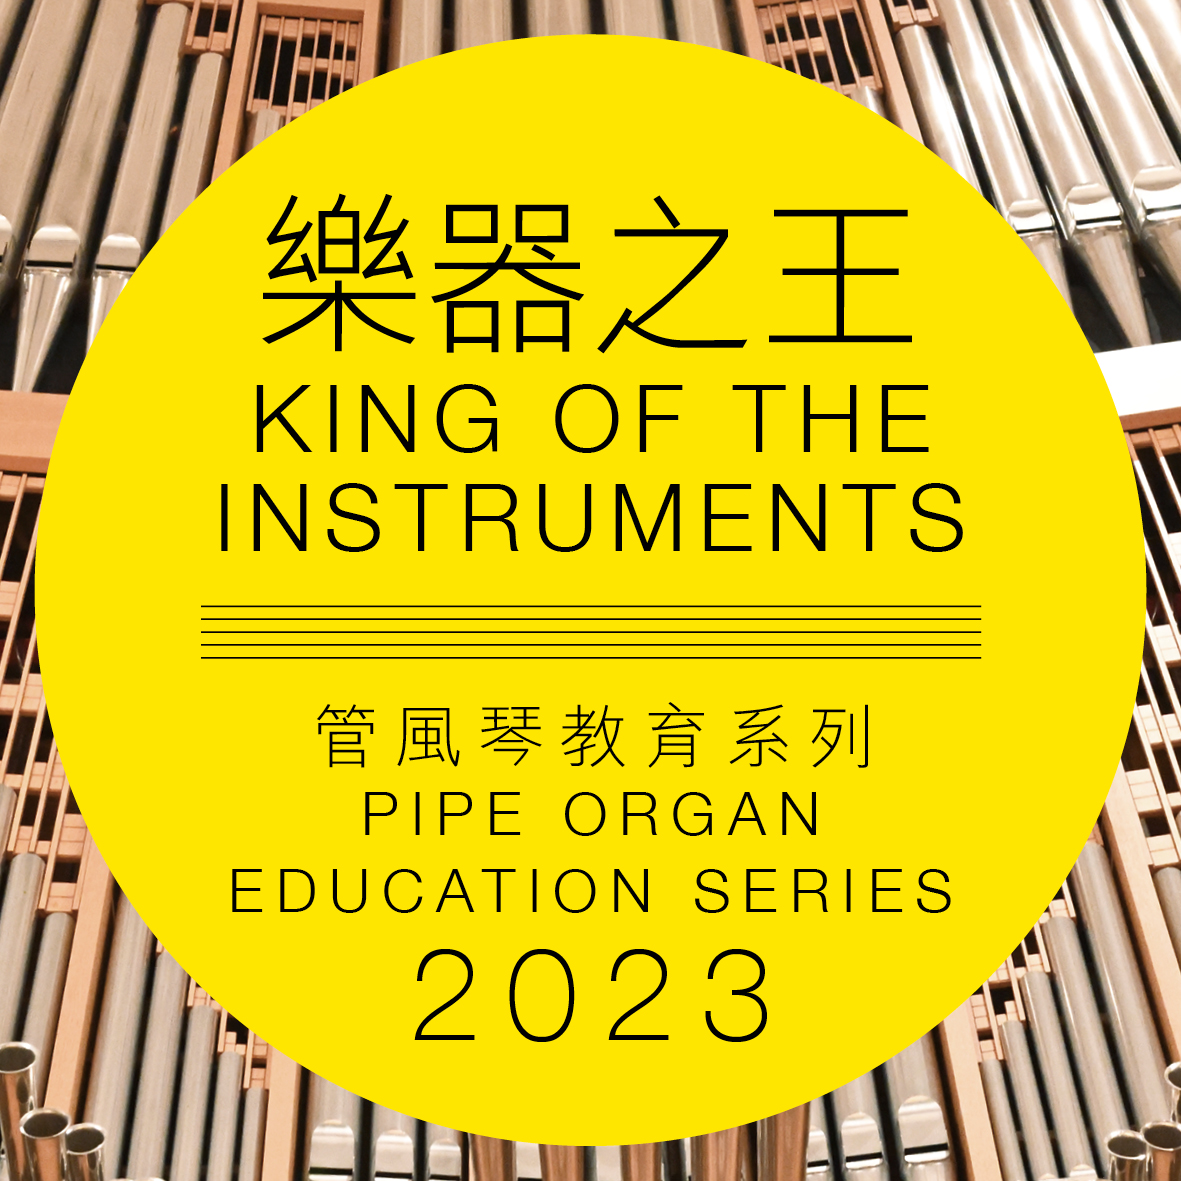 香港文化中心「樂器之王」管風琴教育系列 2023